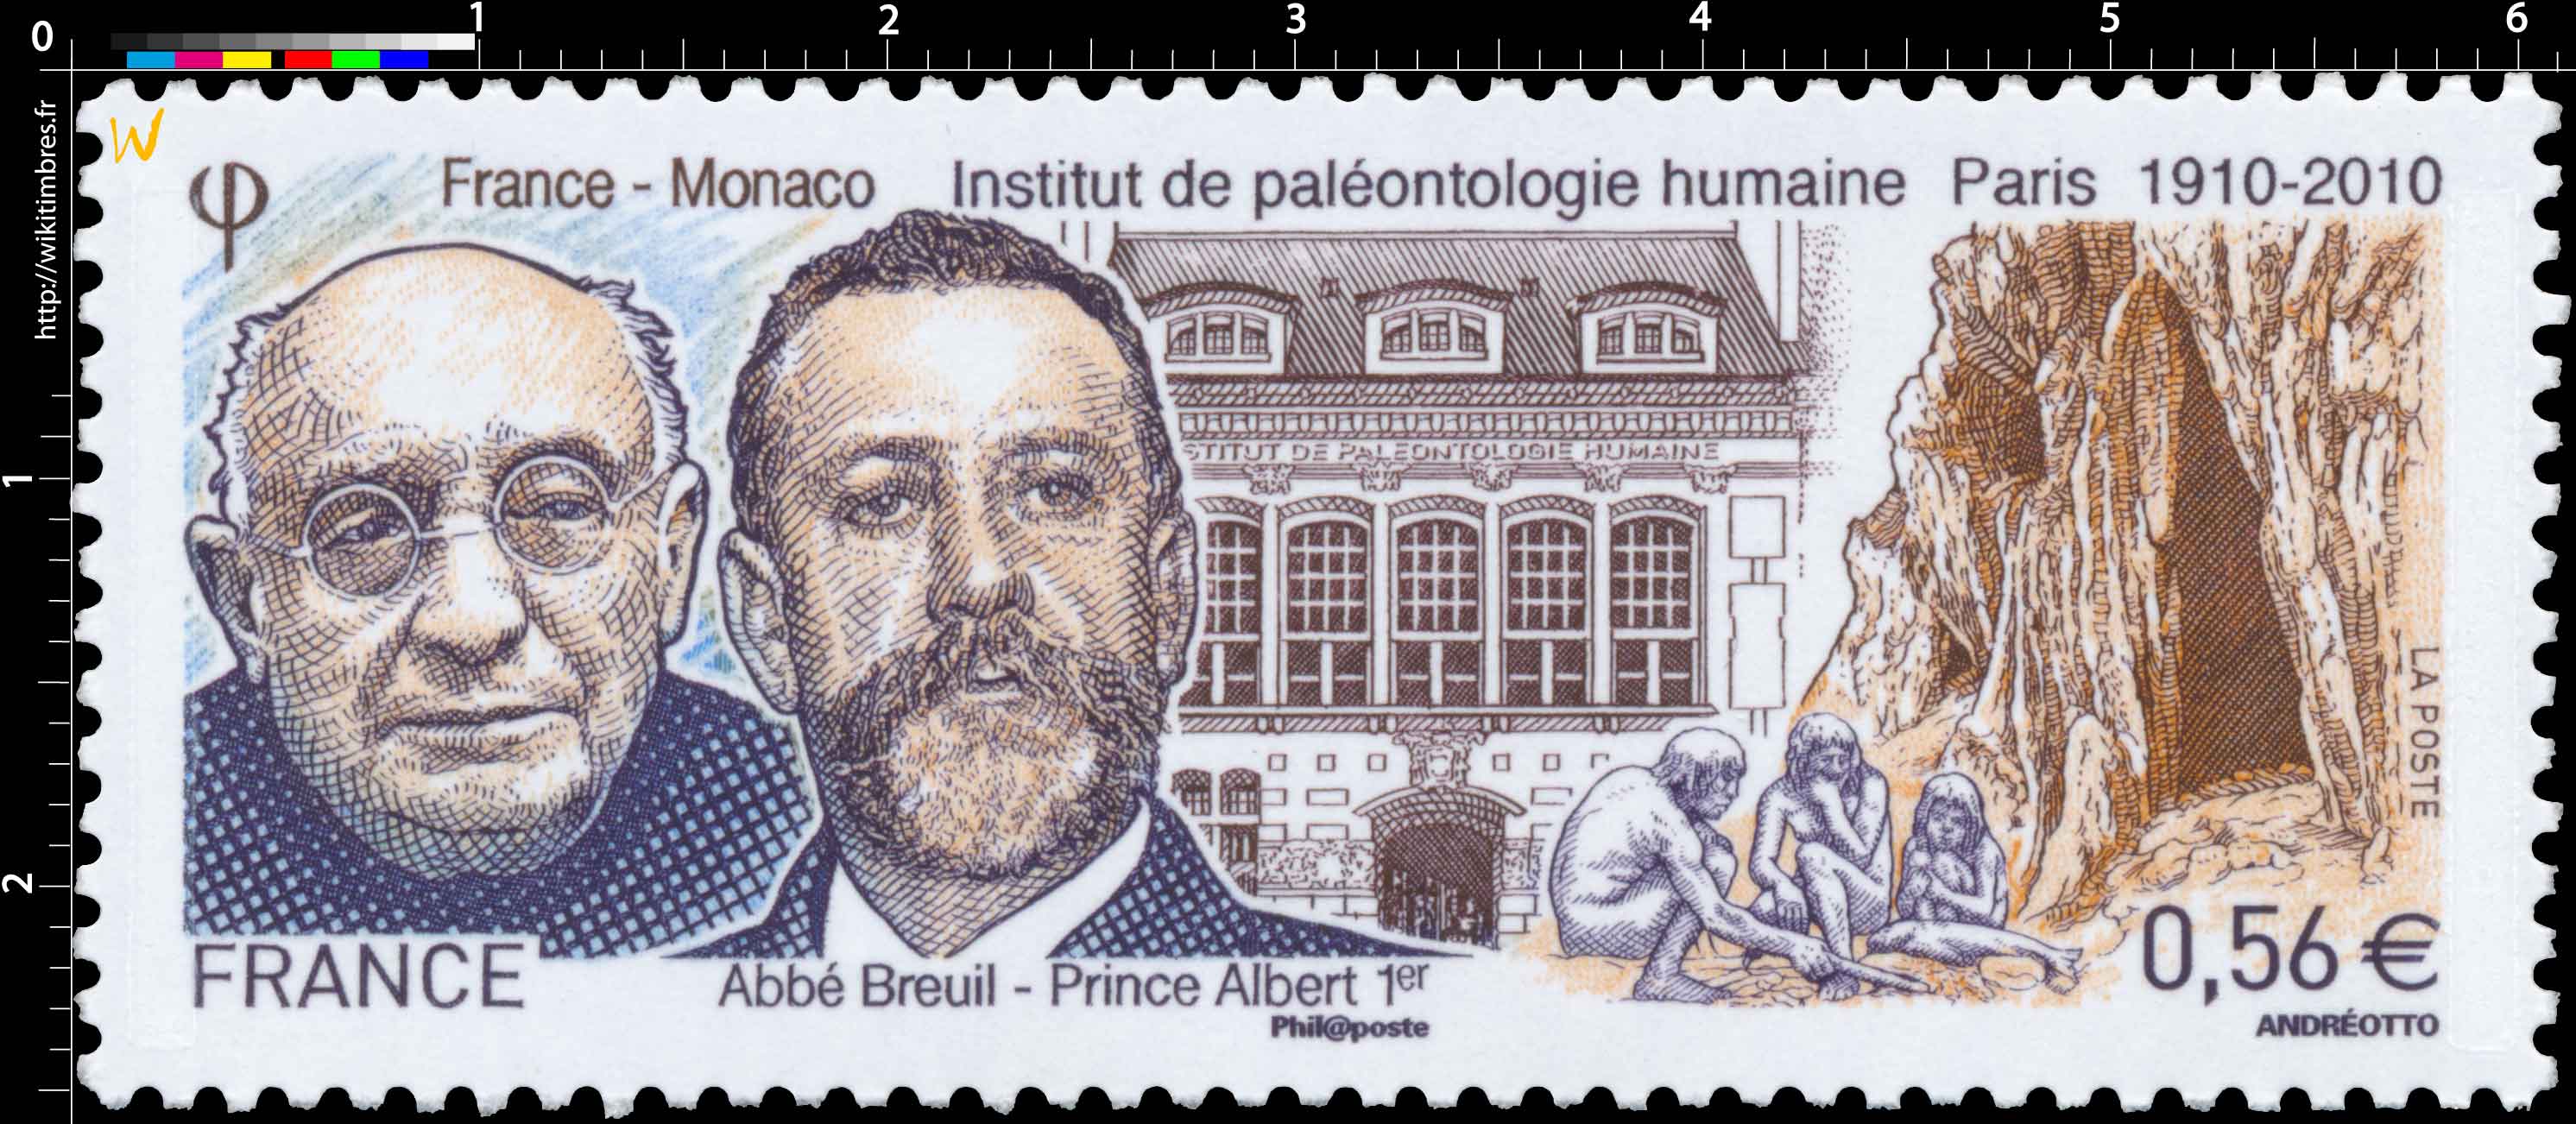 France - Monaco institut de paléontologie humaine Paris 1910-2010 Abbé Breuil - Prince Albert 1er